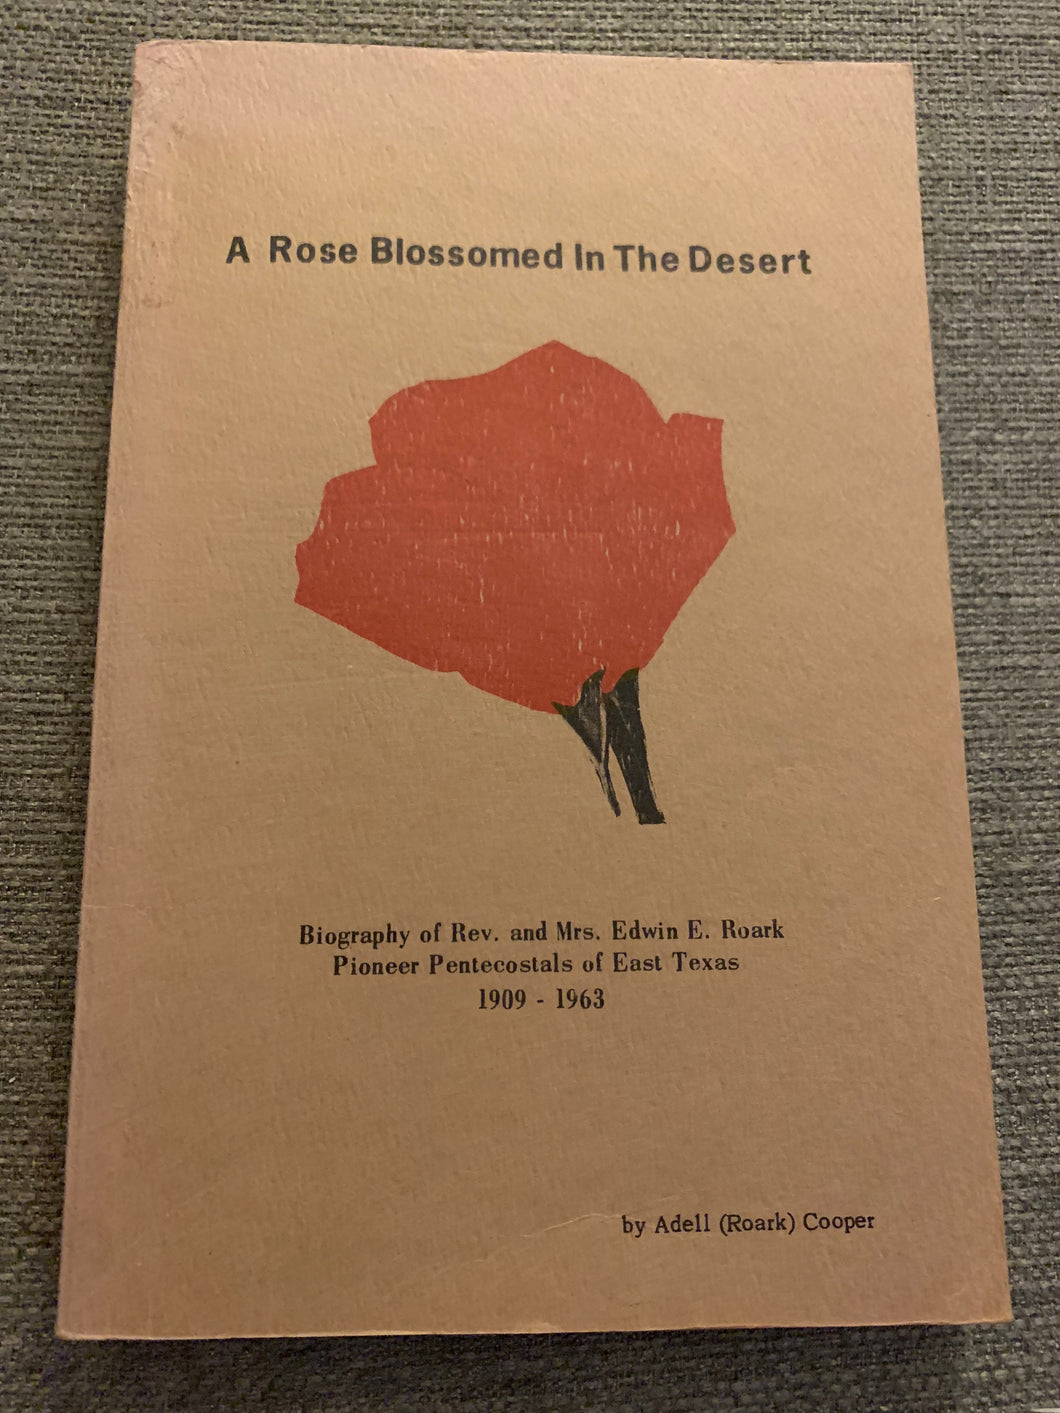 A Rose Blossomed In The Desert by Adell (Roark) Cooper